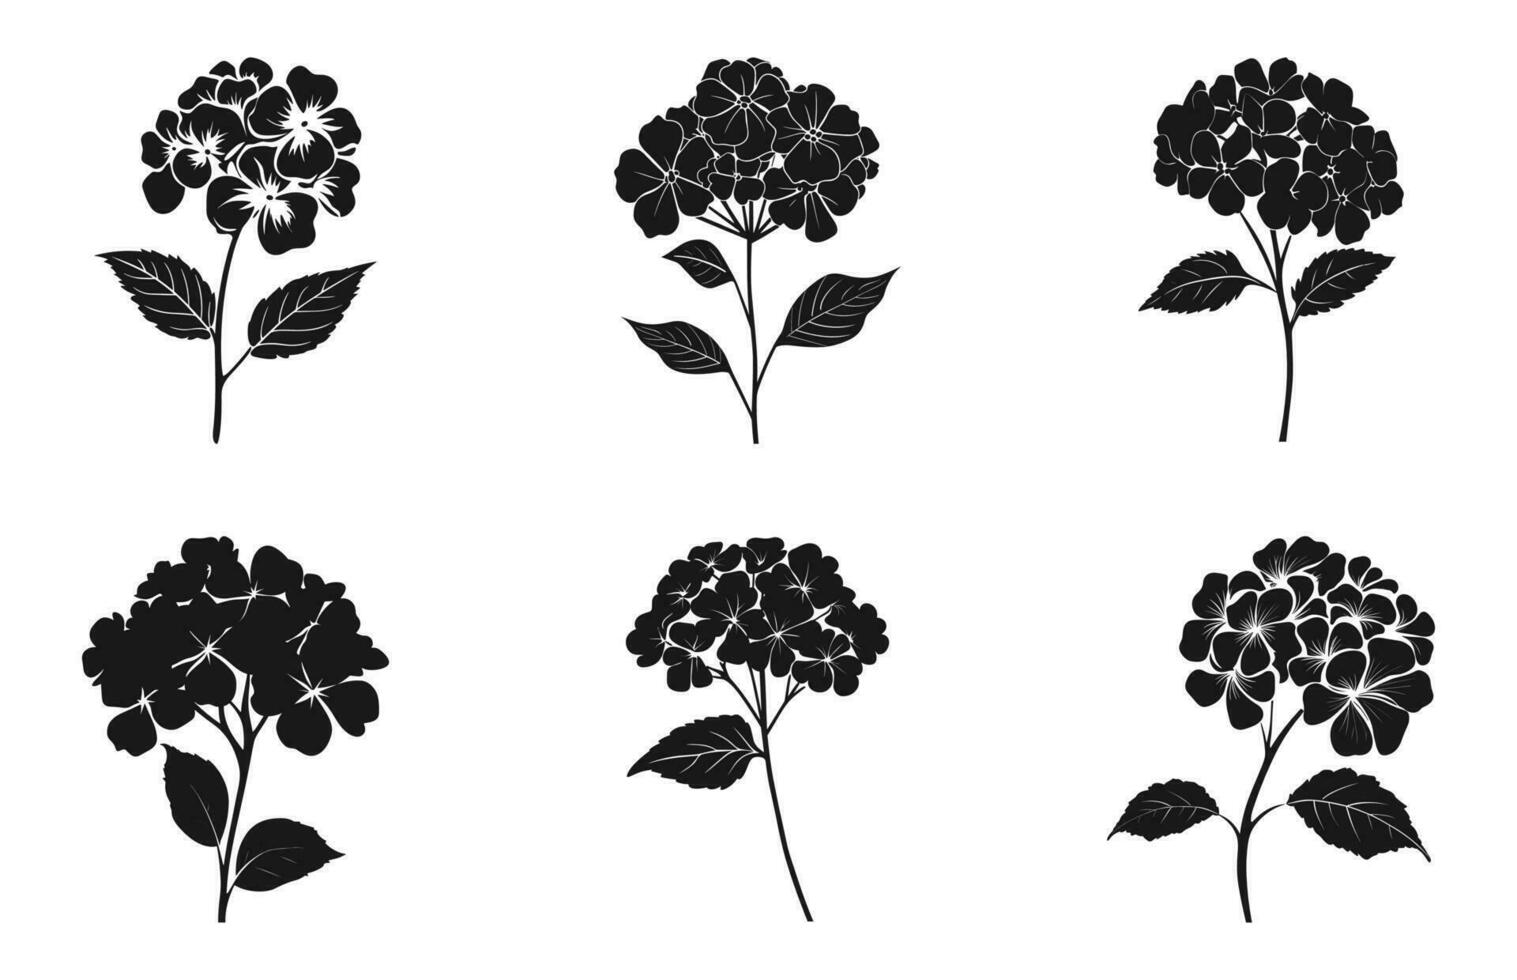 Hortensie Blume Silhouette Vektor Satz, Hortensie Blumen Clip Art bündeln